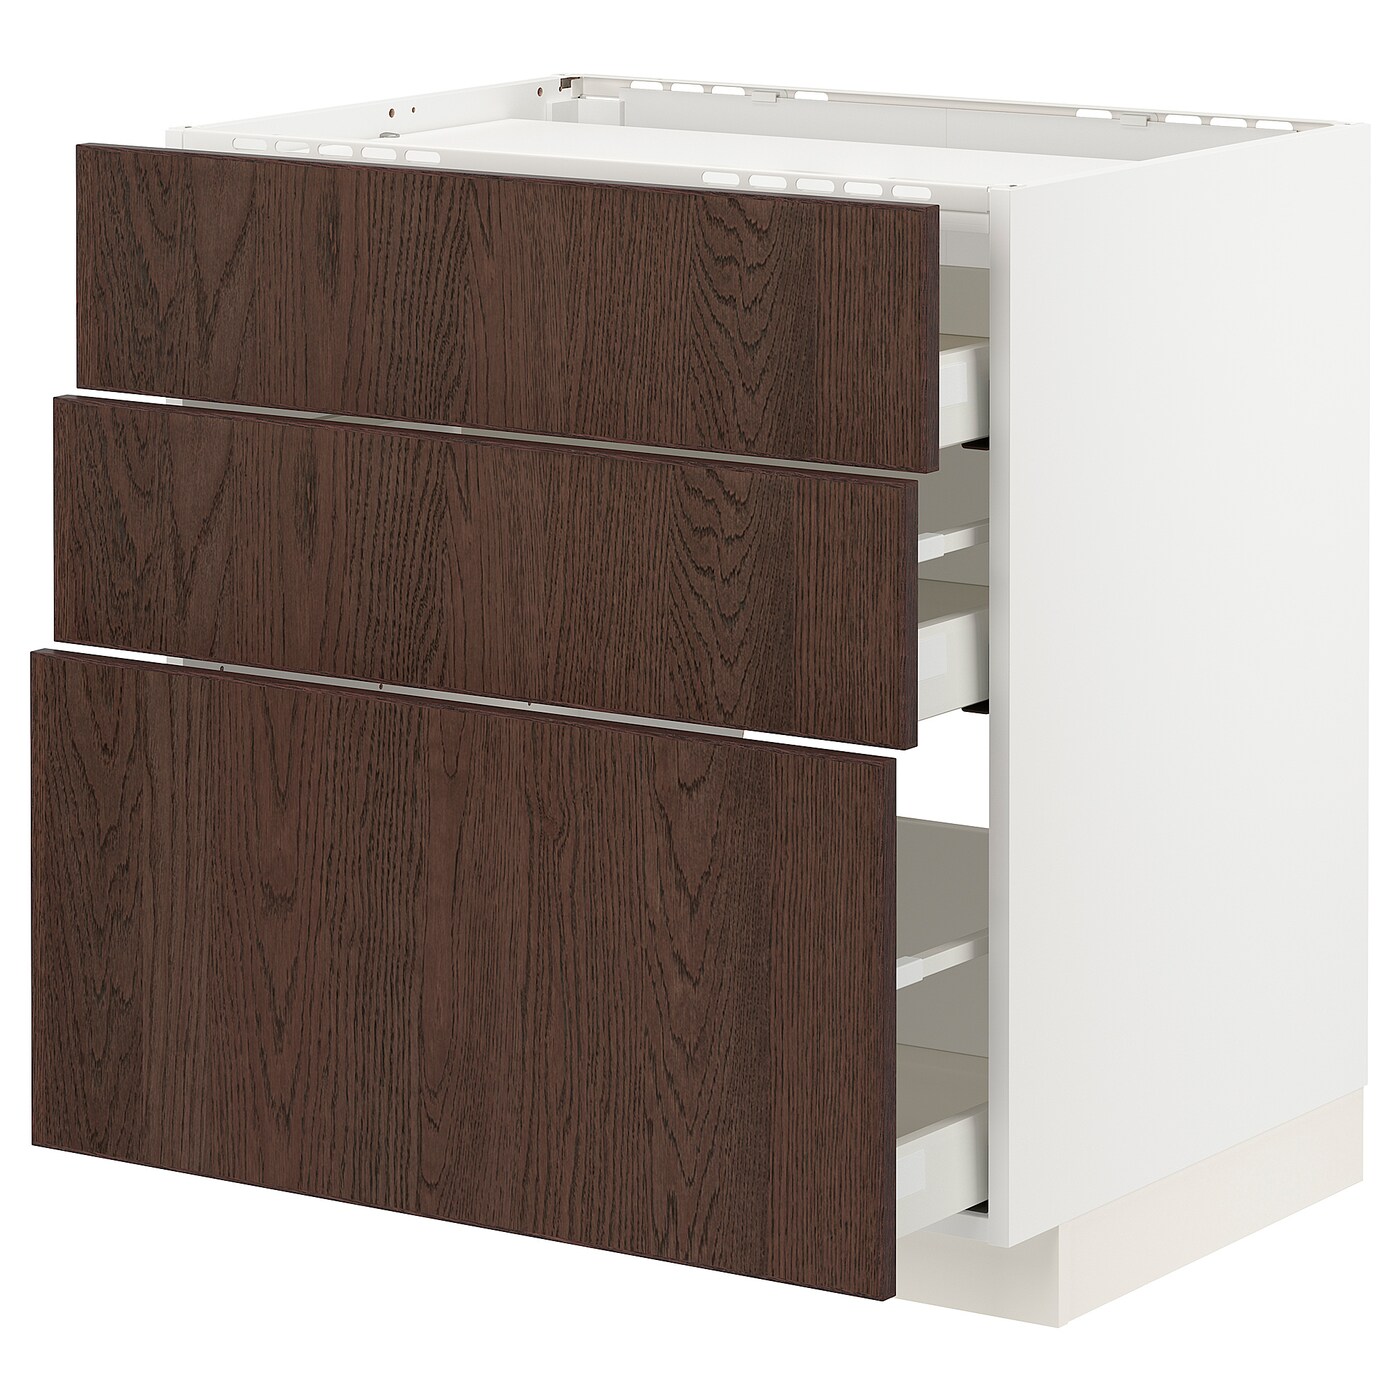 Напольный кухонный шкаф  - IKEA METOD MAXIMERA, 88x61,6x80см, белый/коричневый, МЕТОД МАКСИМЕРА ИКЕА